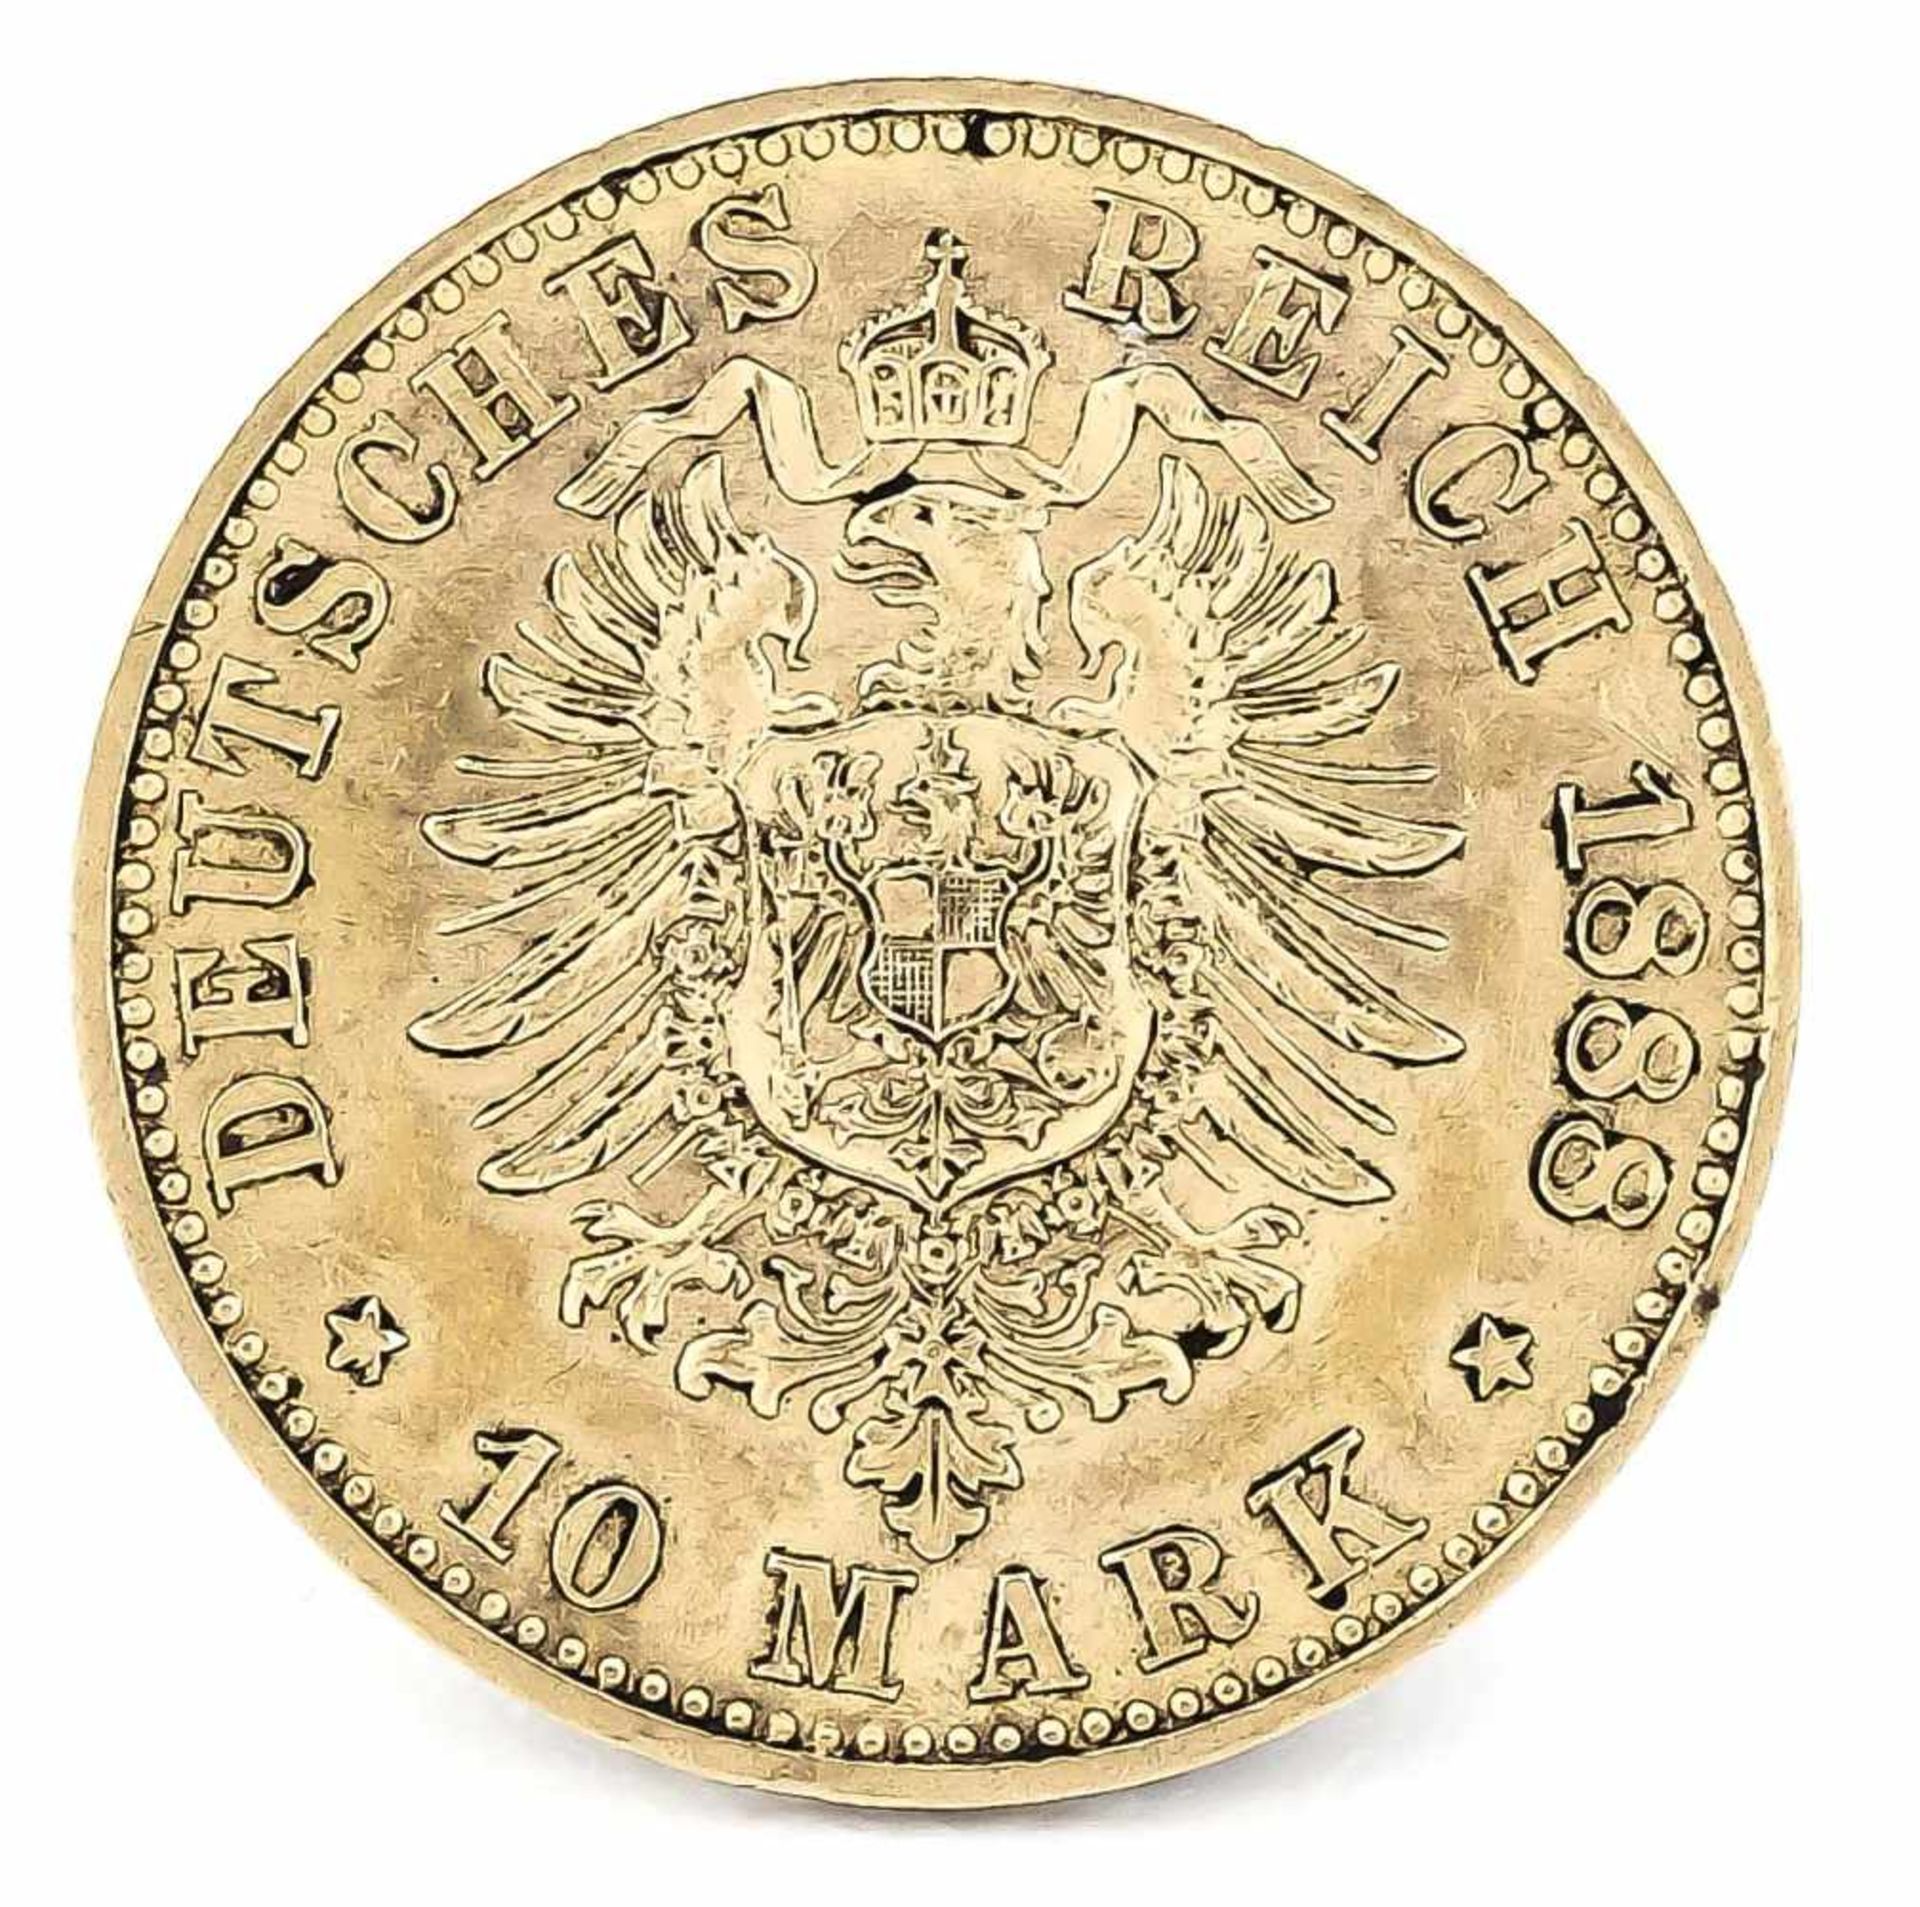 10 Mark, Preußen, Wilhelm Deutscher Kaiser König von Preußen, 1888 A, in vz - Bild 2 aus 2